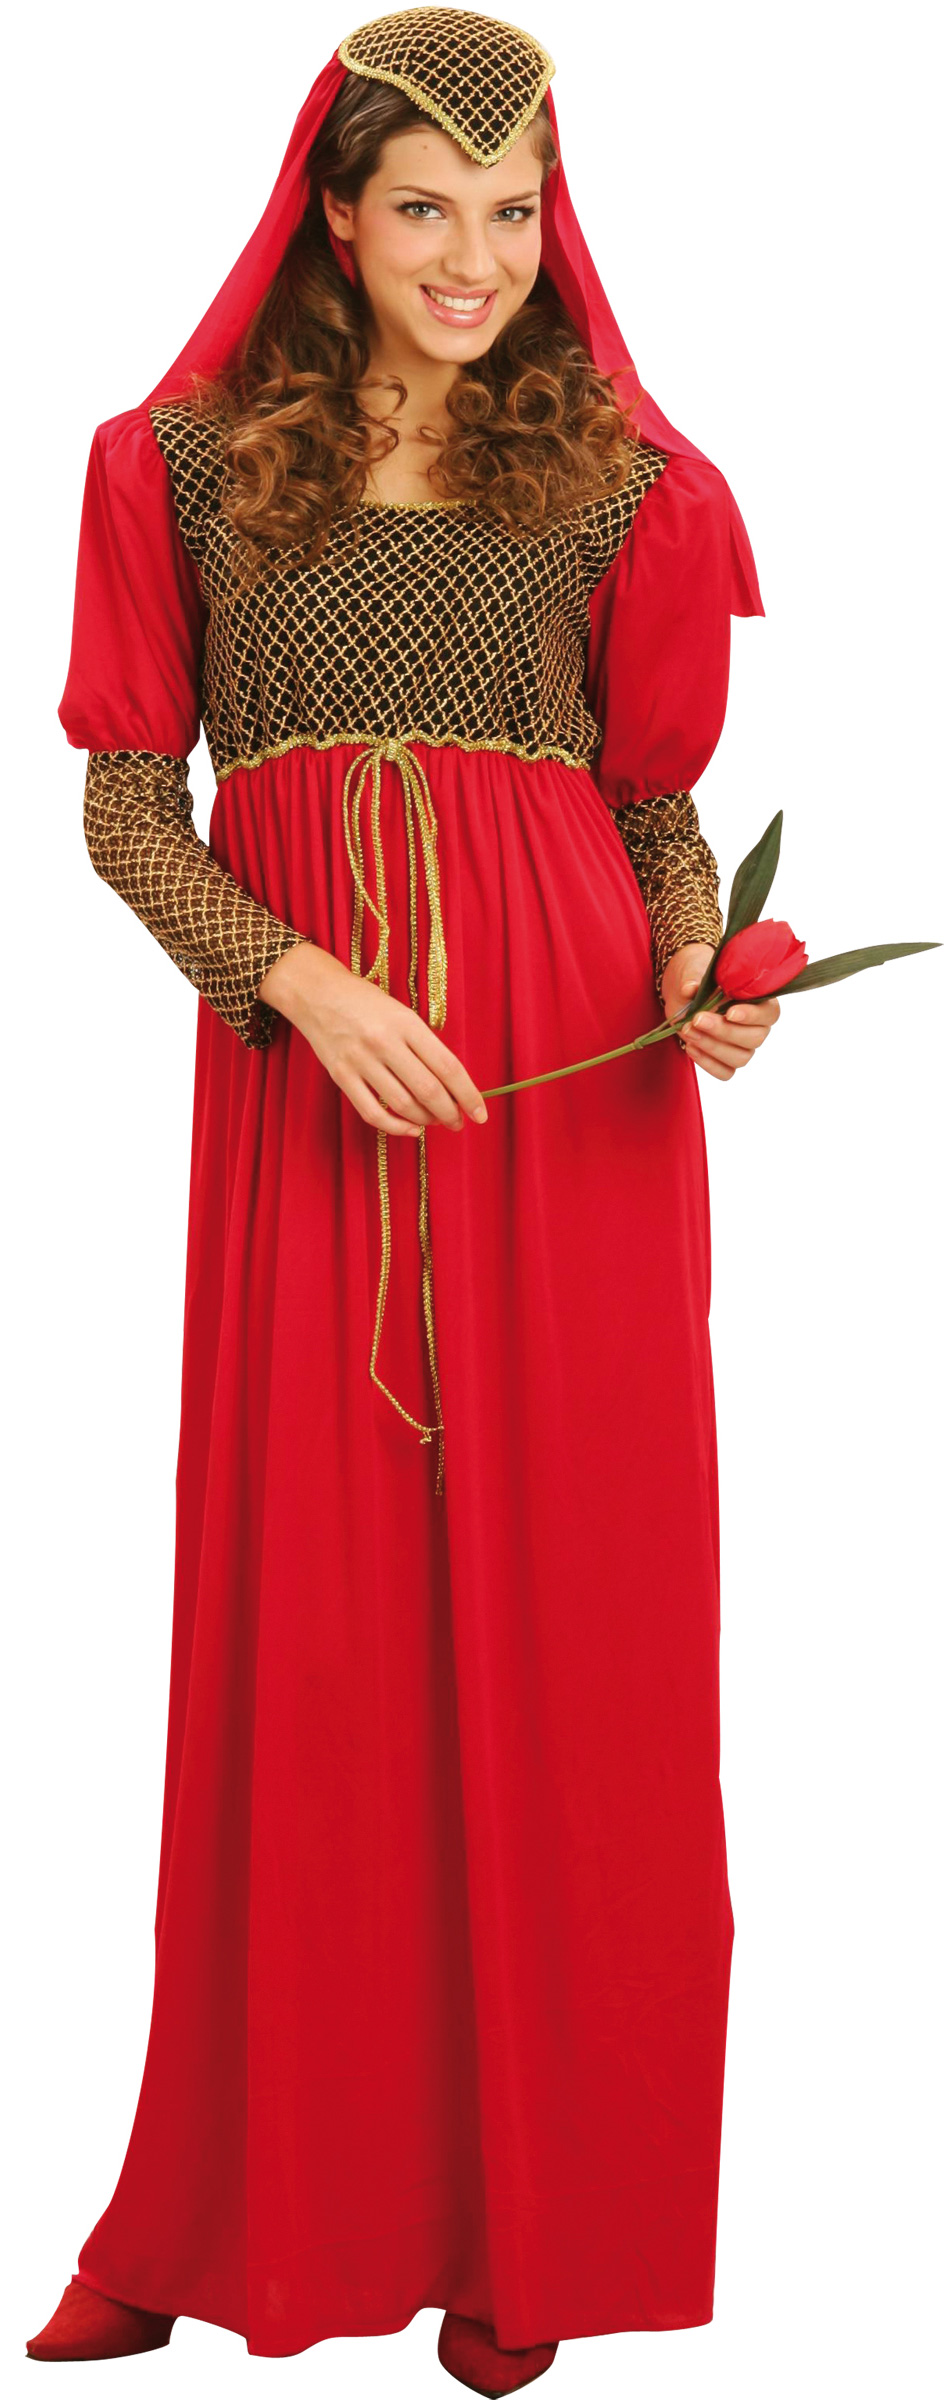 Déguisement robe princesse médiévale femme : Deguise-toi, achat de  Déguisements adultes